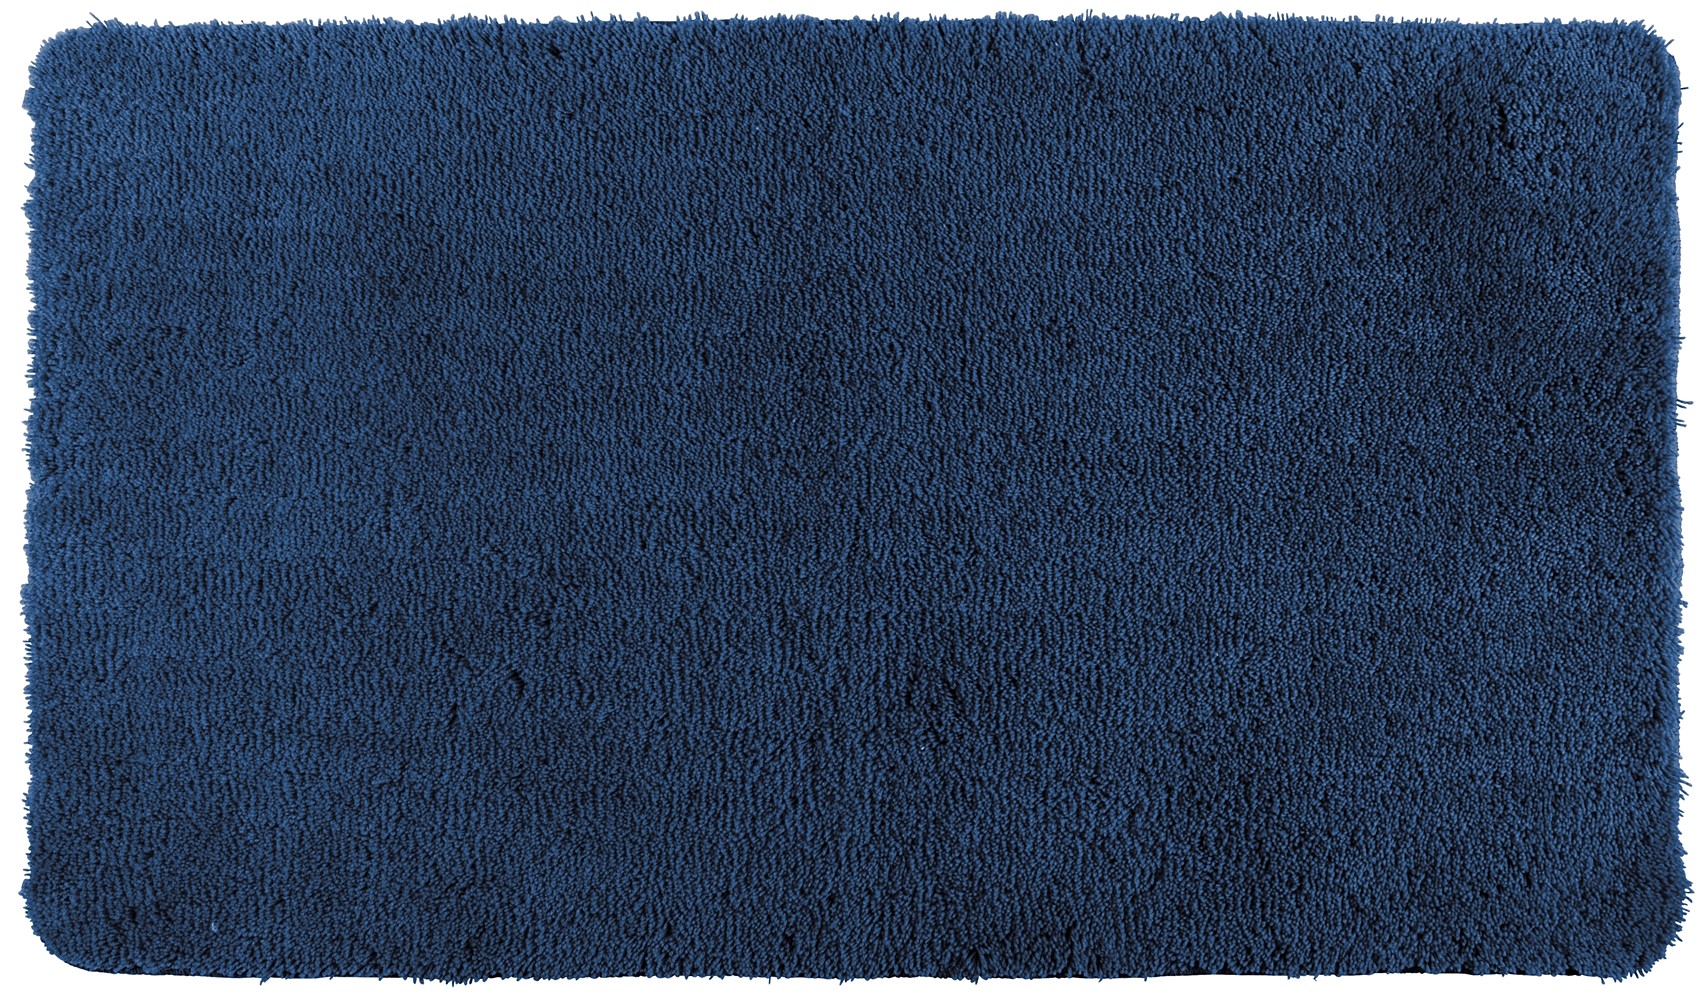 Tapis de bain Belize bleu marine 55x65cm - WENKO